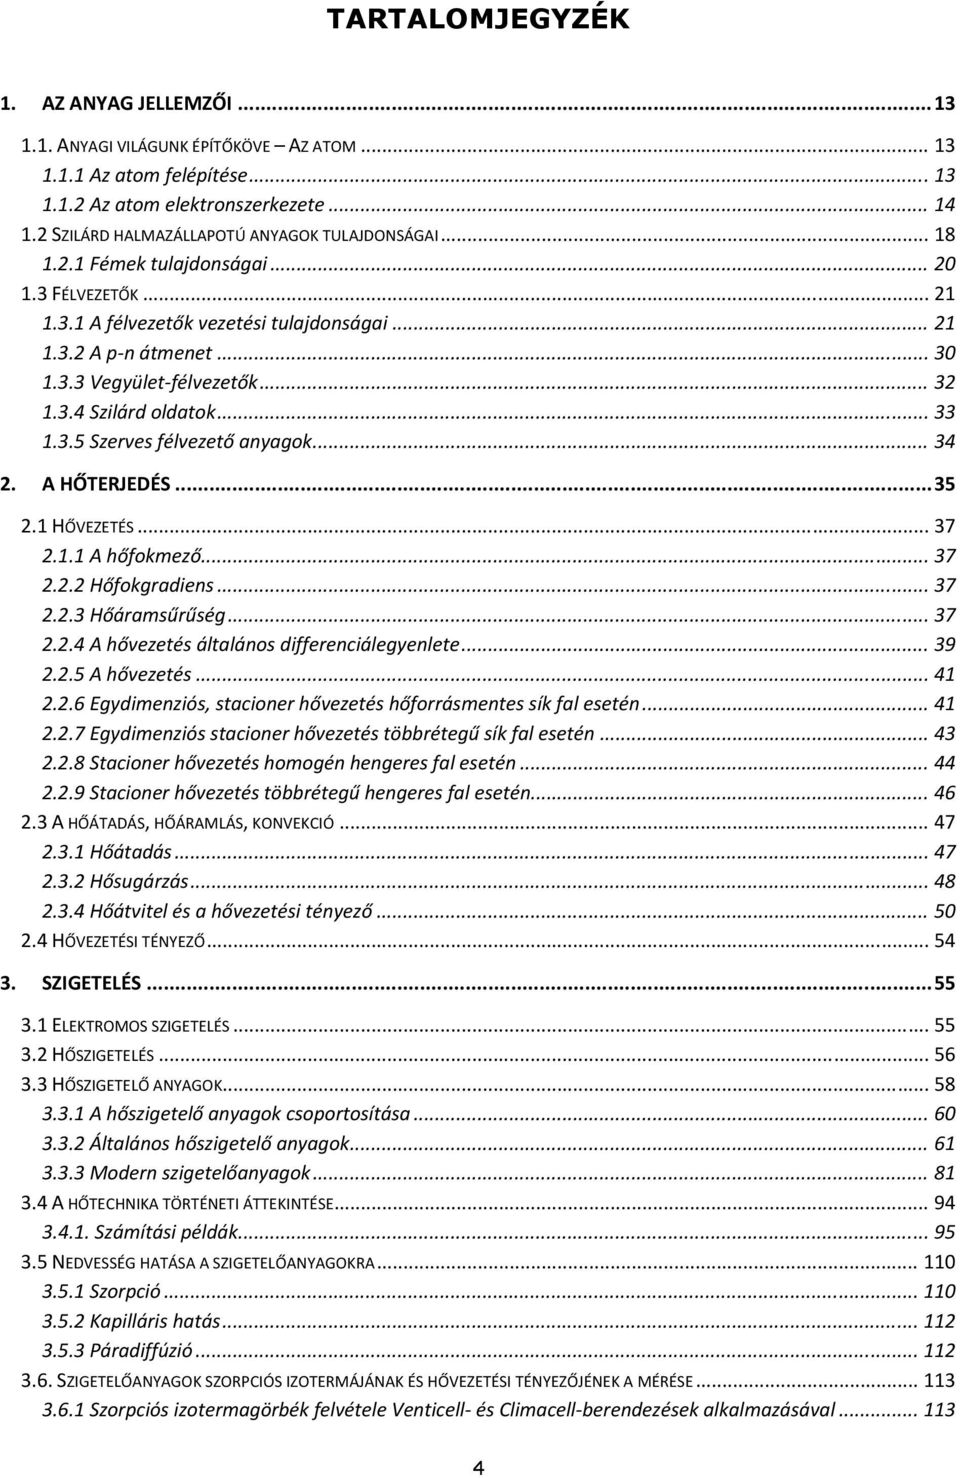 Funkcionális rendszerek és működésük - PDF Ingyenes letöltés